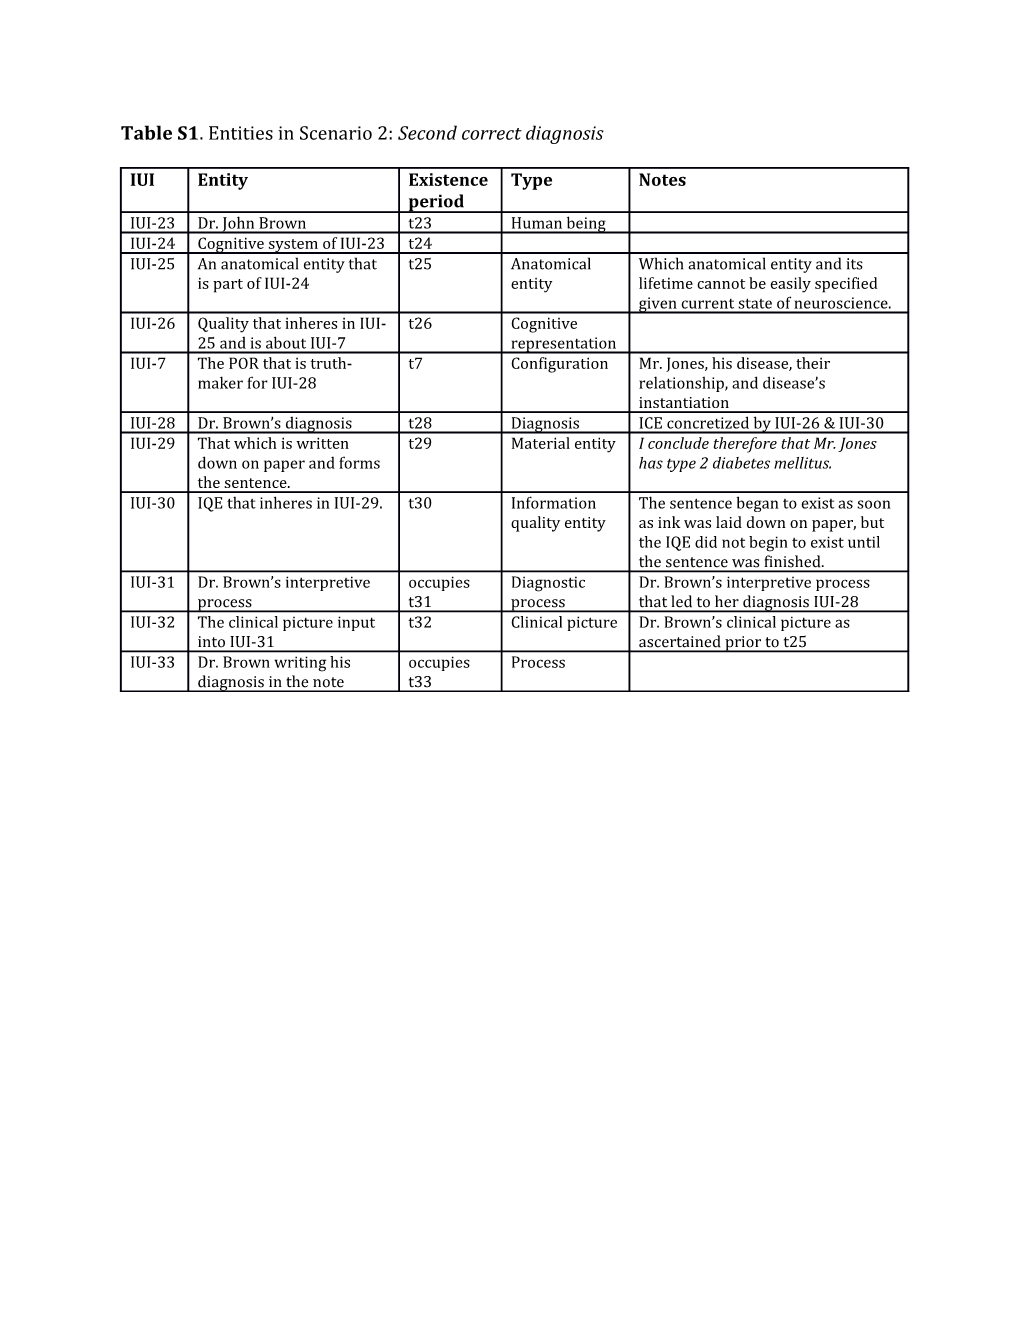 Table S1. Entities in Scenario 2: Second Correct Diagnosis